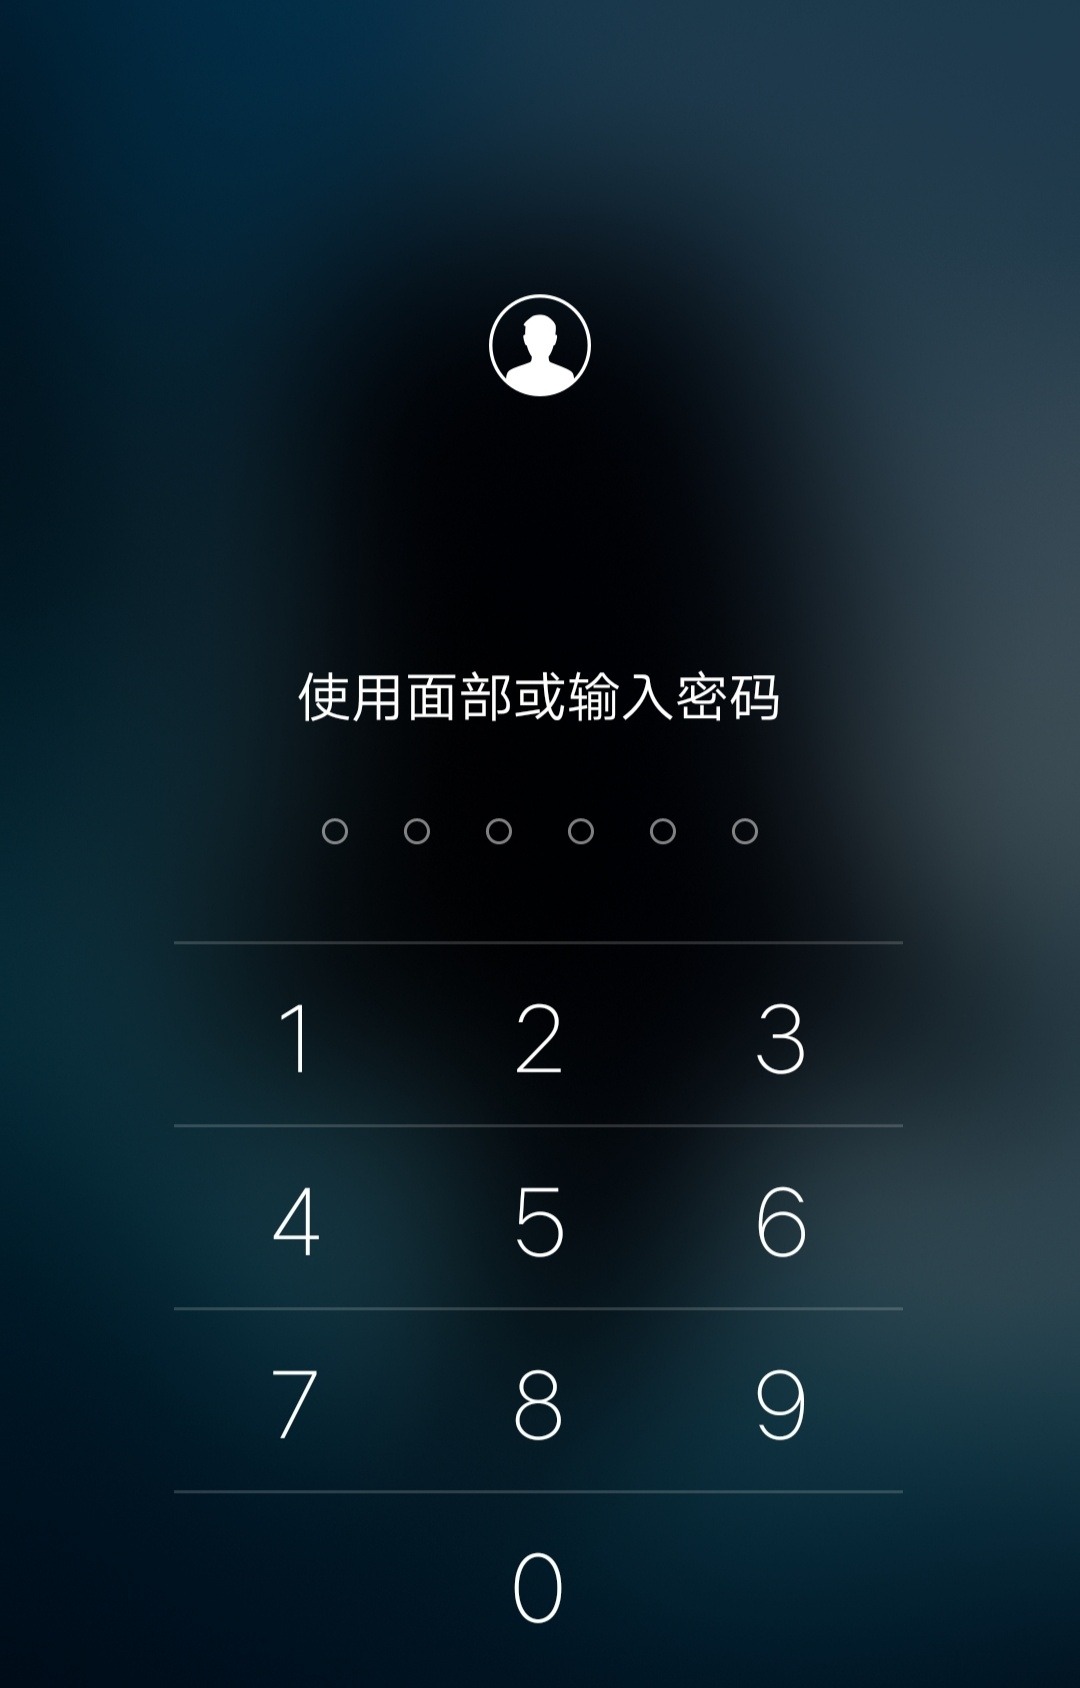 中国联通服务密码_联通服务密码_联通服务密码